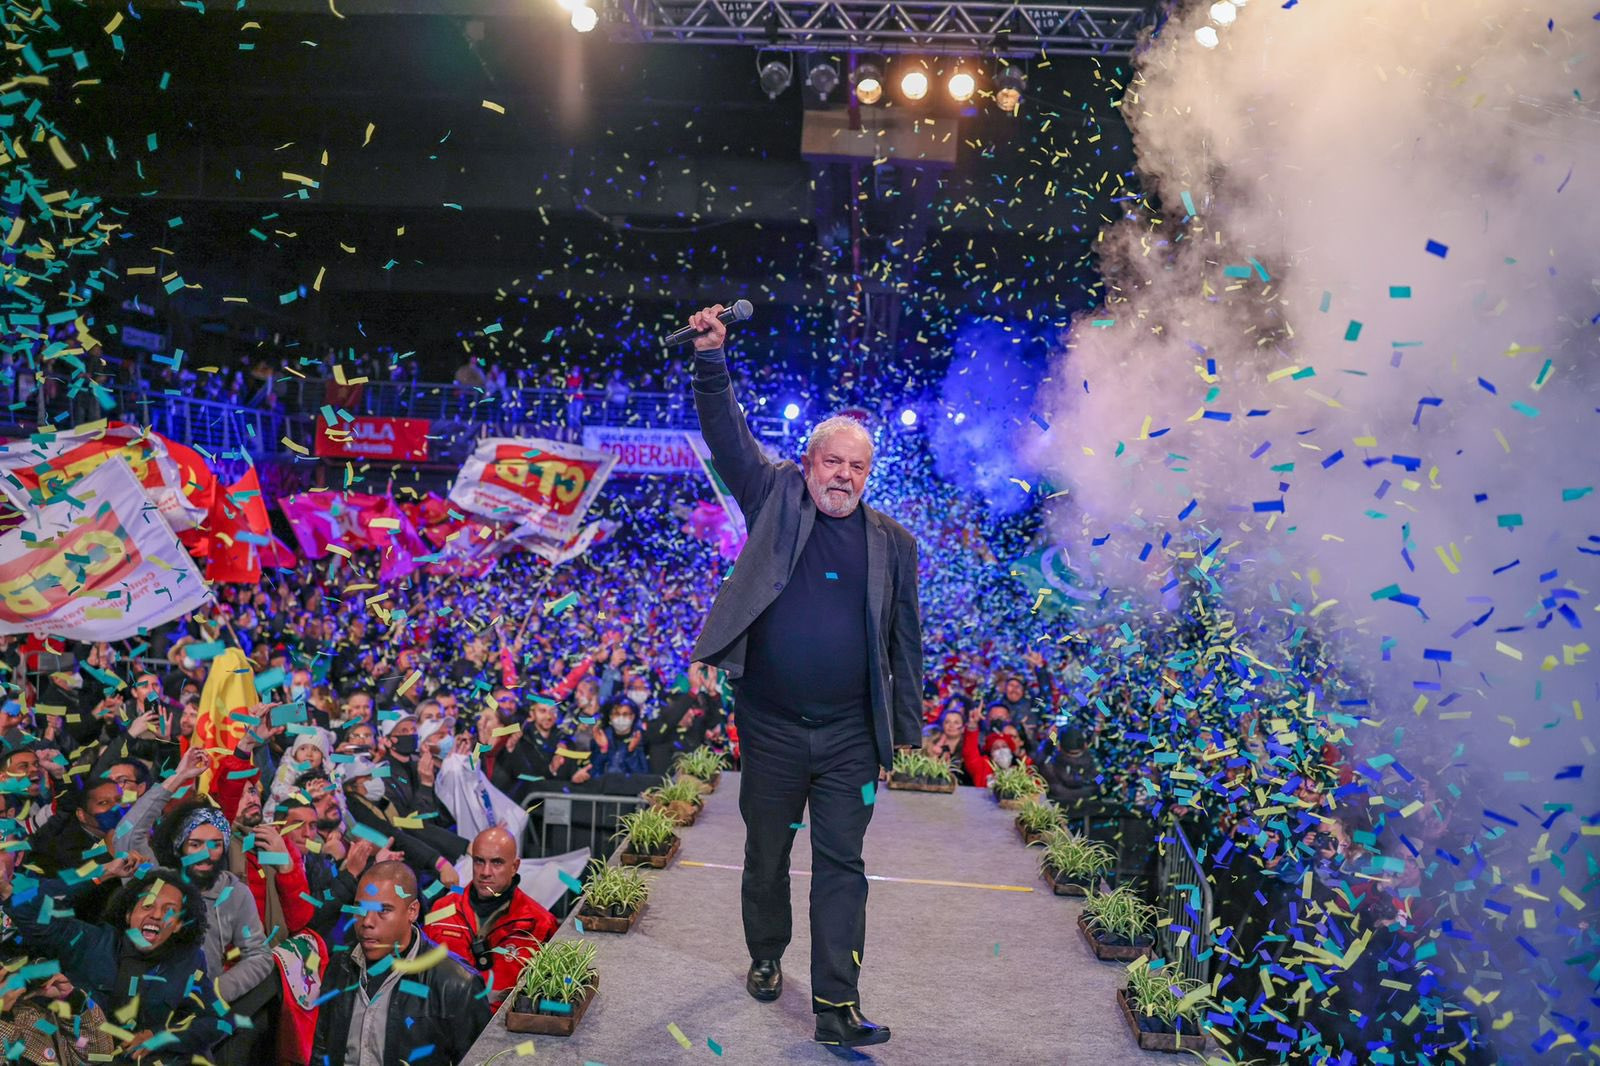 Campanha de Lula reforça esquema de segurança sob resistência de ex-presidente